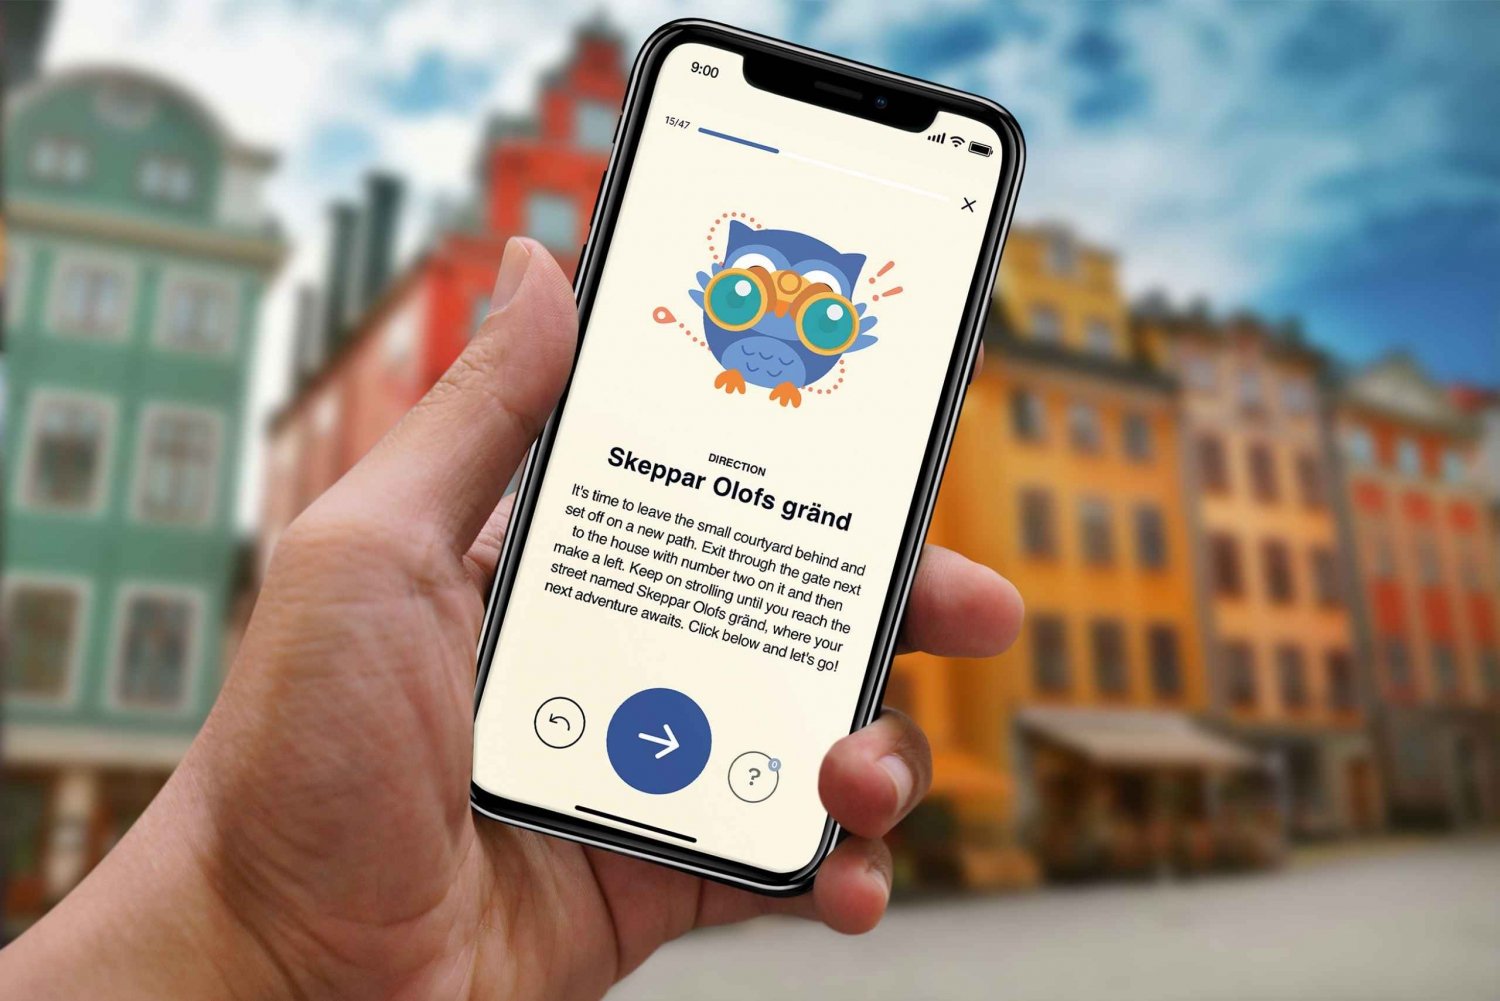 Stoccolma: Tour guidato della città vecchia per iOS e Android